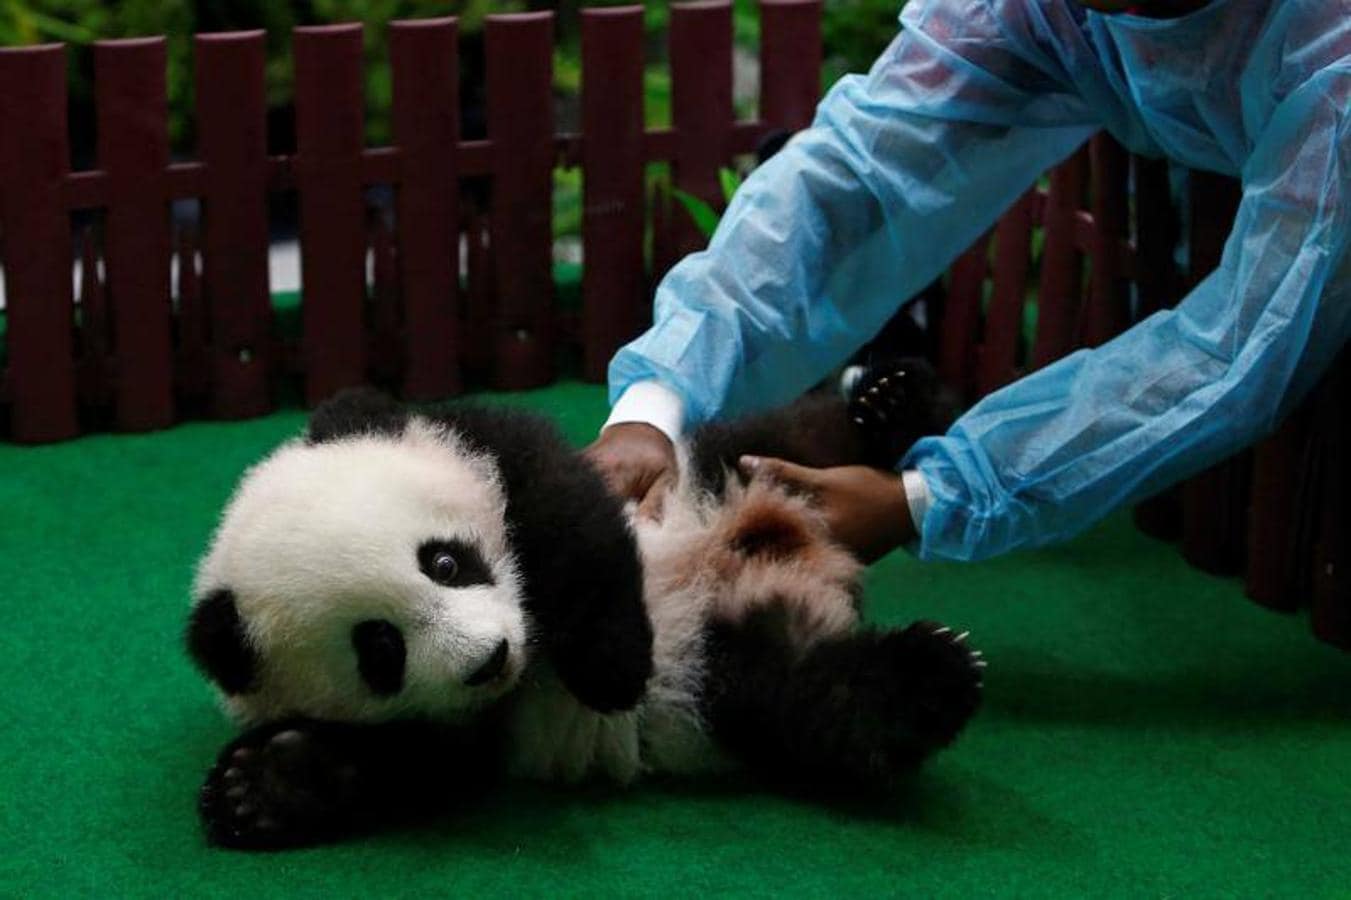 Un empleado del zoológico lleva al cachorro de panda gigante hembra de cuatro meses de edad, nacido de la madre Liang Liang y el padre Xing Xing, en exhibición al público por primera vez en el Zoológico Nacional en Kuala Lumpur, Malasia.